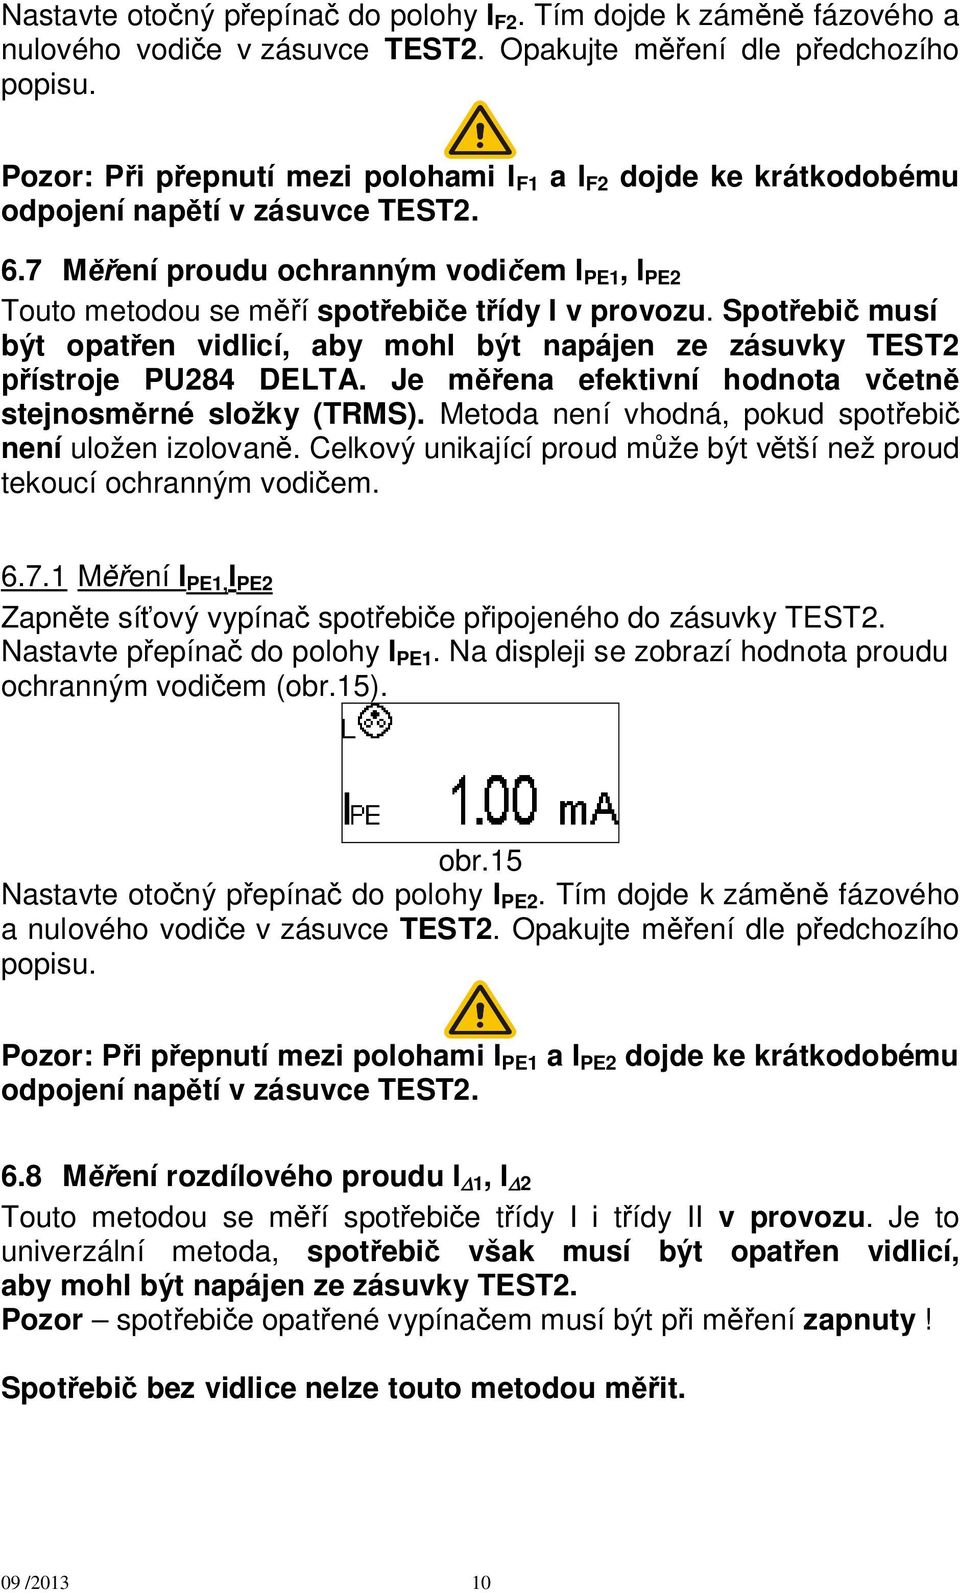 Spot ebi musí být opat en vidlicí, aby mohl být napájen ze zásuvky TEST2 ístroje PU284 DELTA. Je m ena efektivní hodnota v etn stejnosm rné složky (TRMS).